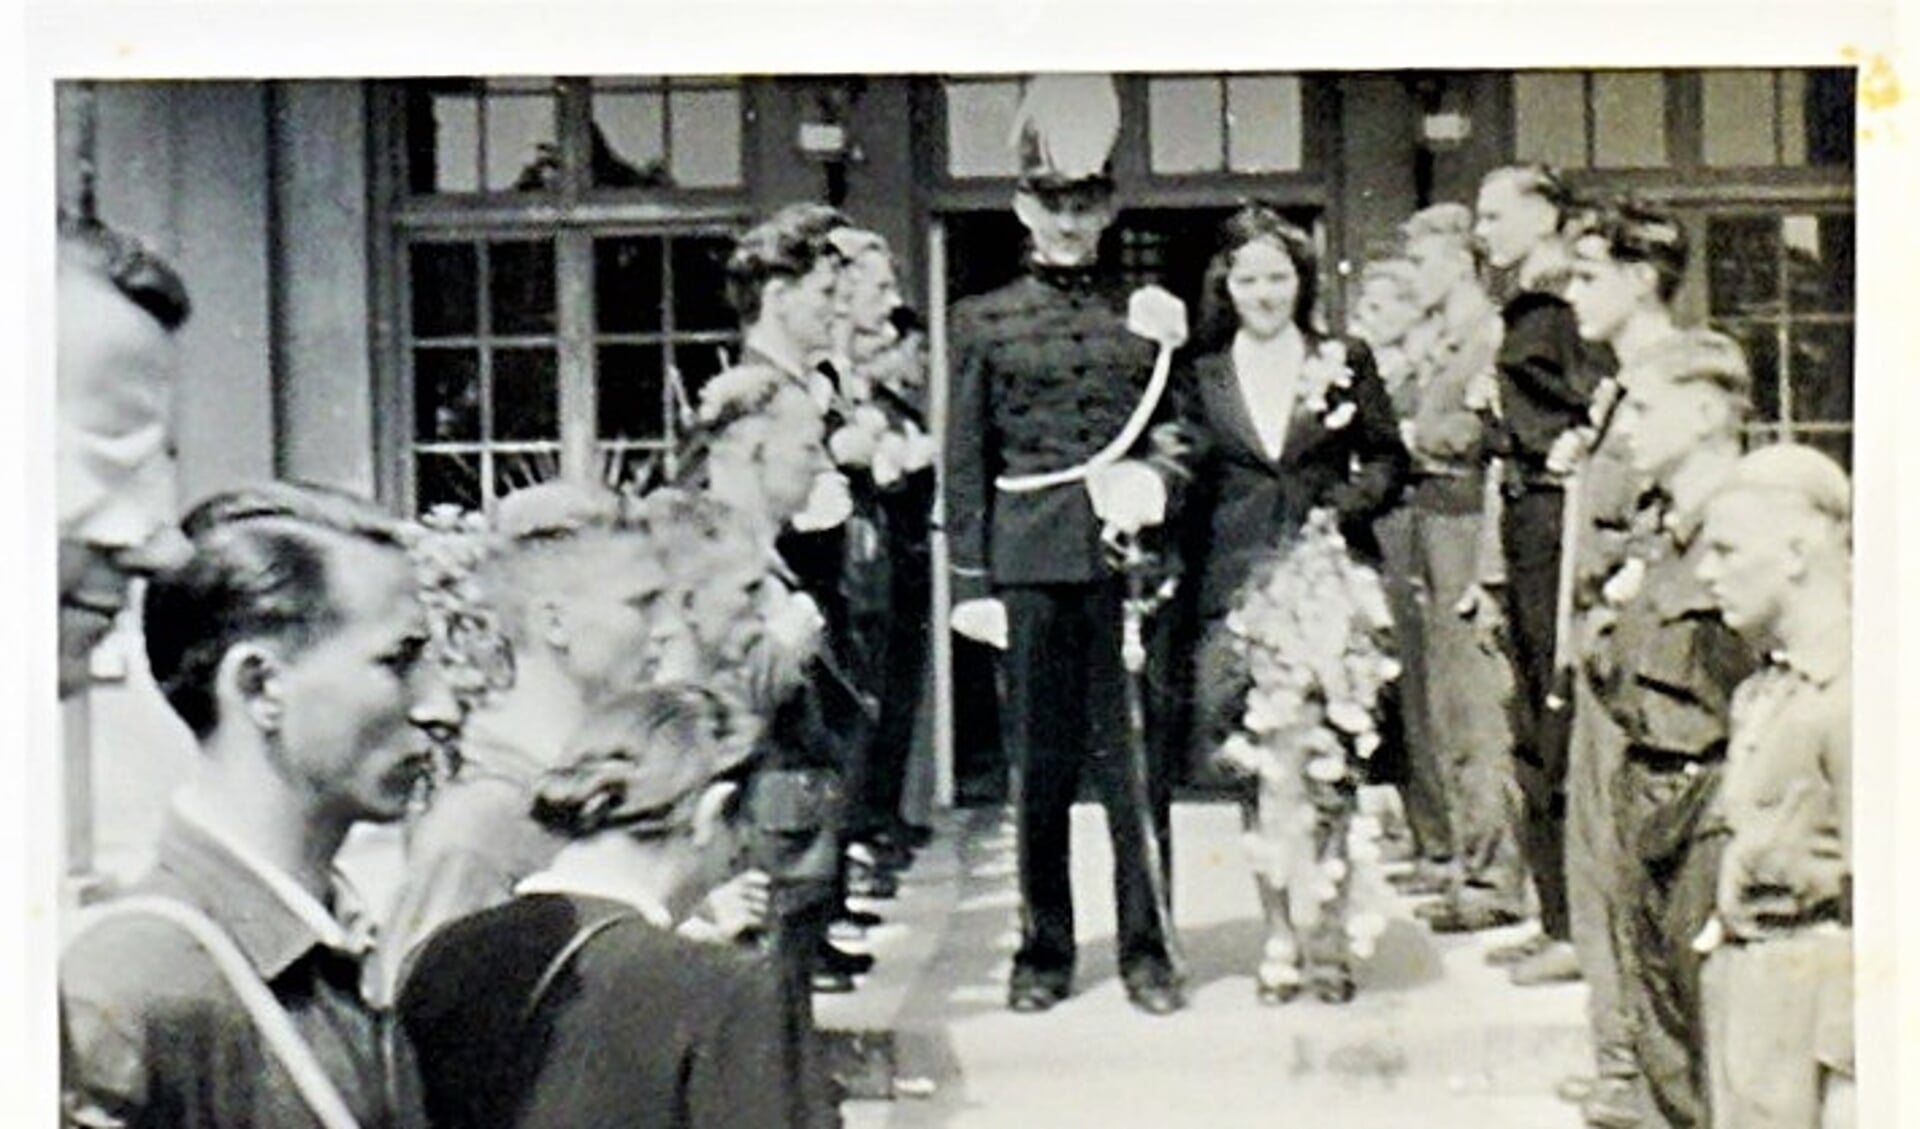 Ze trouwden op 20 juni in Jagtlust, waar zij naast woonde. Walter droeg zijn gala-uniform. Zij een mantelpakje gemaakt uit een cape van Walters uniform.